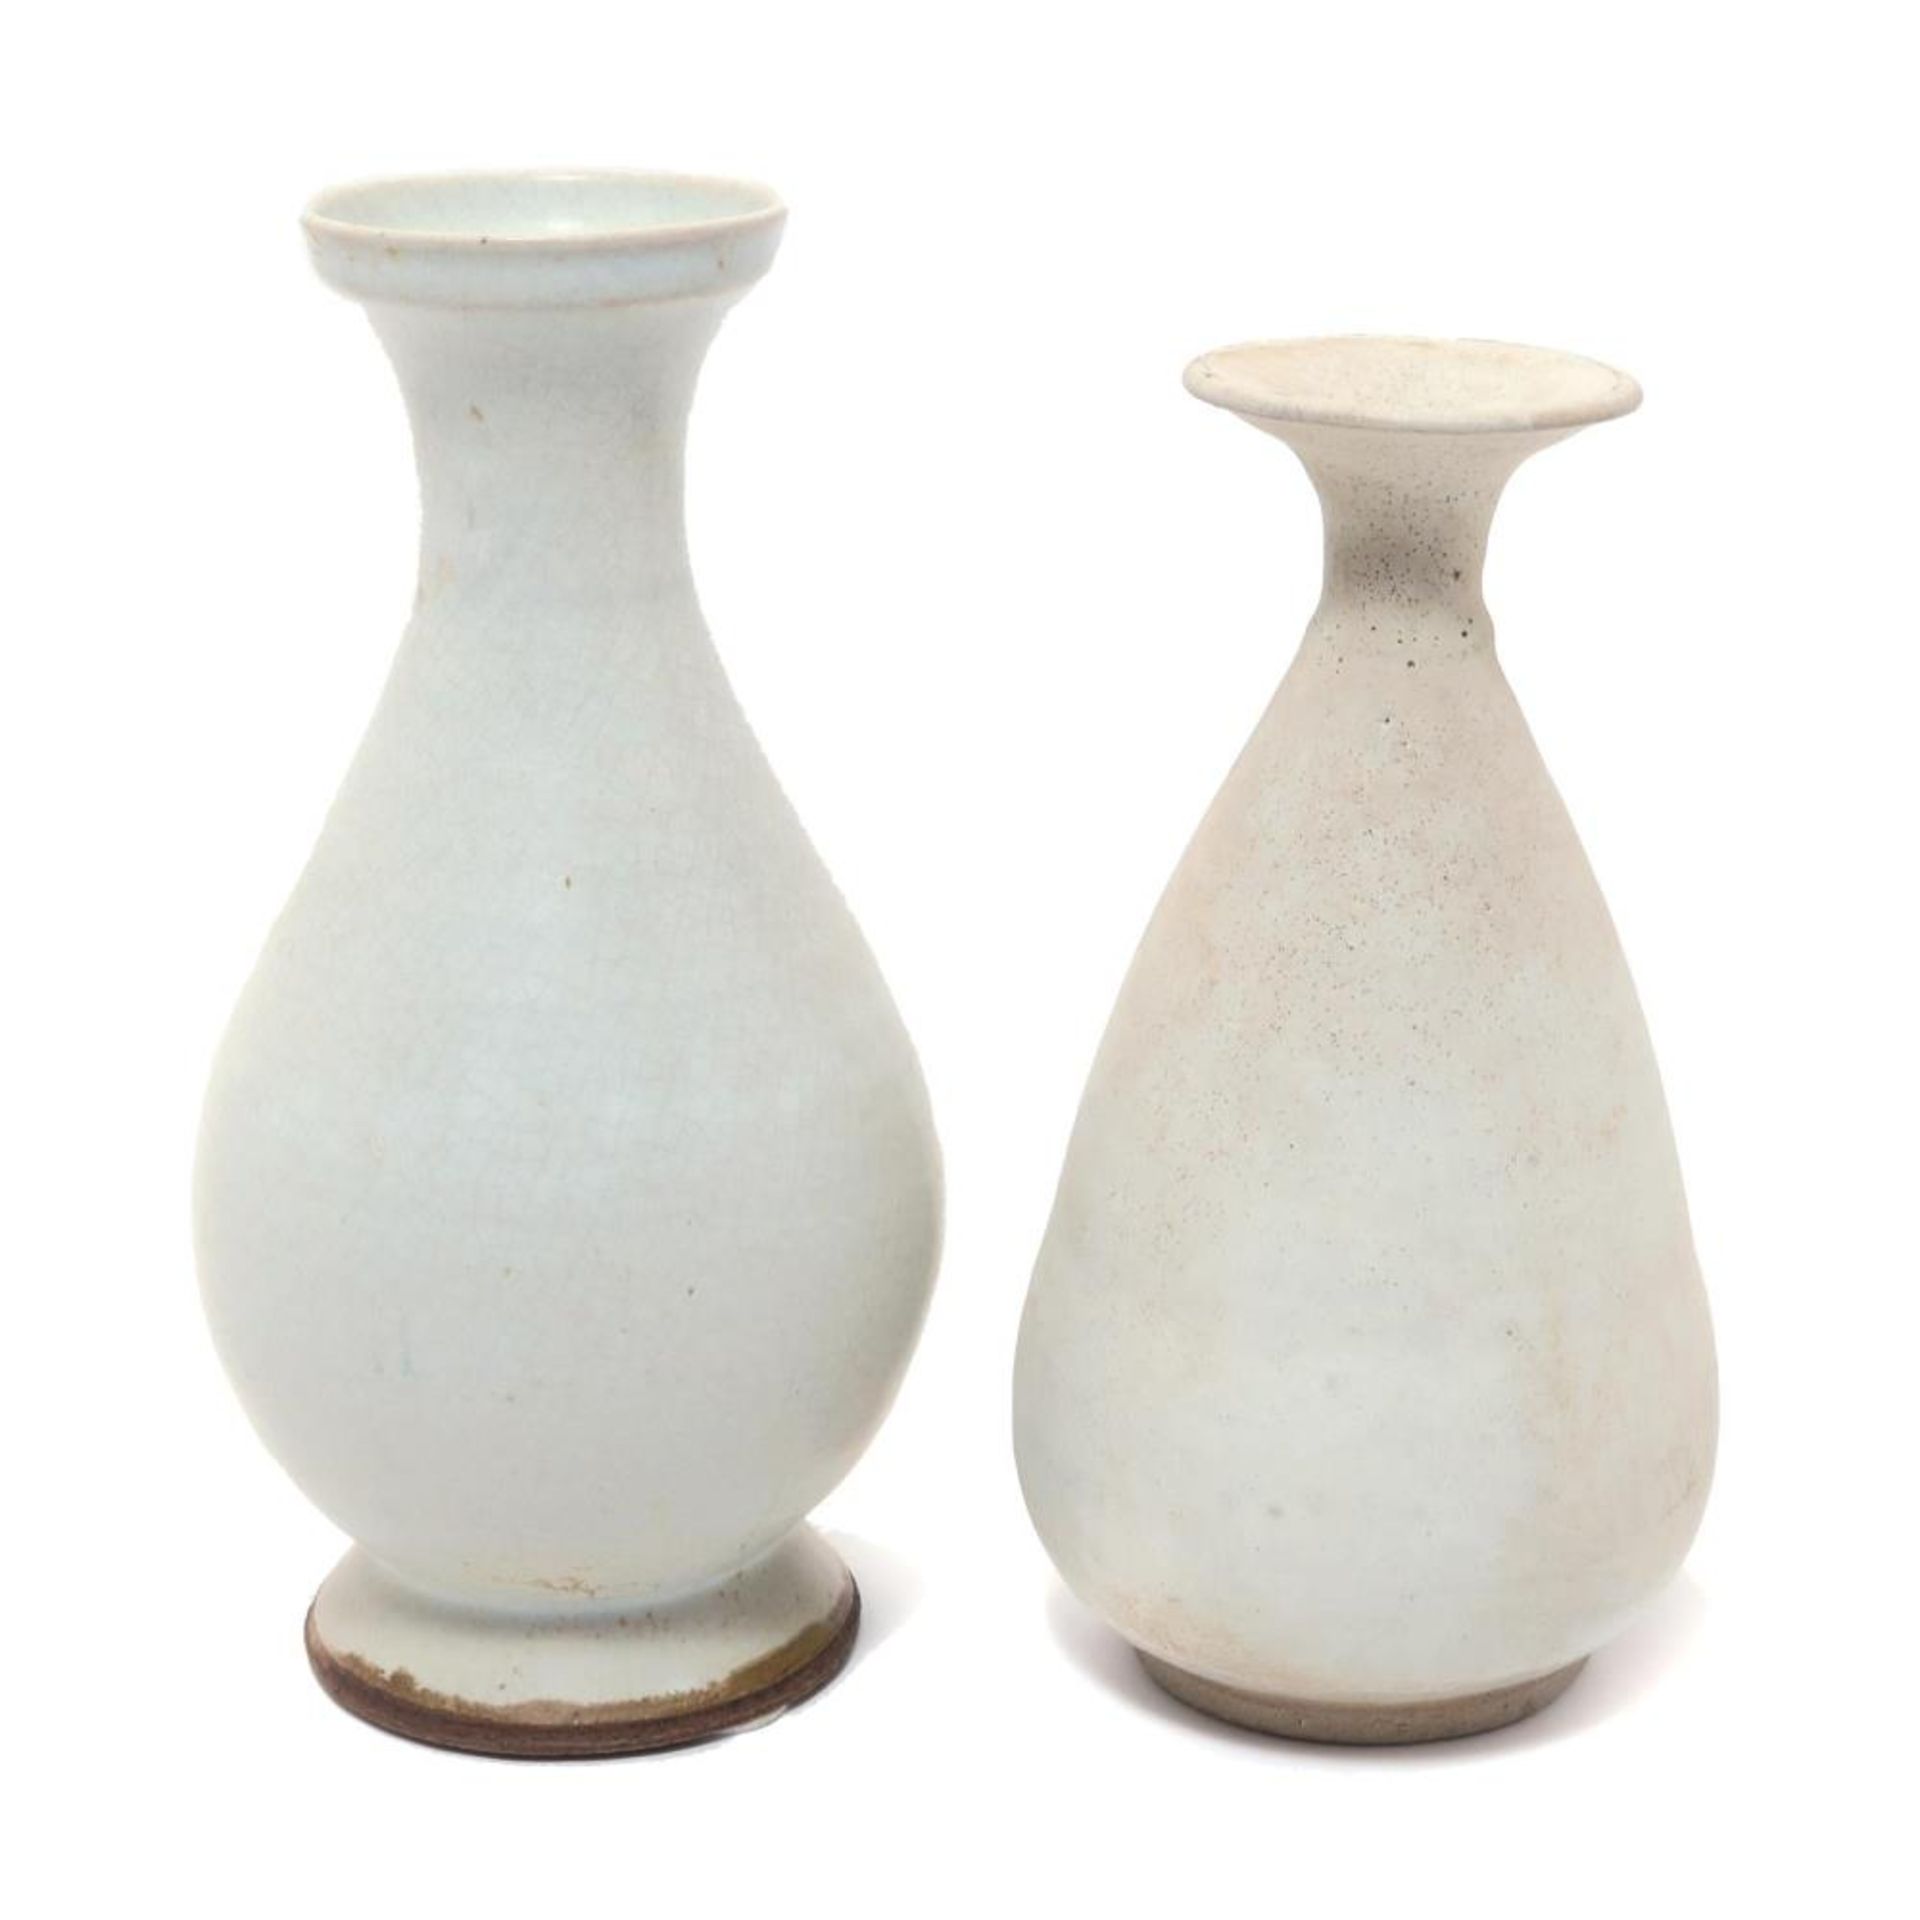 Zwei Vasen. Heller bzw. bräunlicher Scherben, helle Glasur